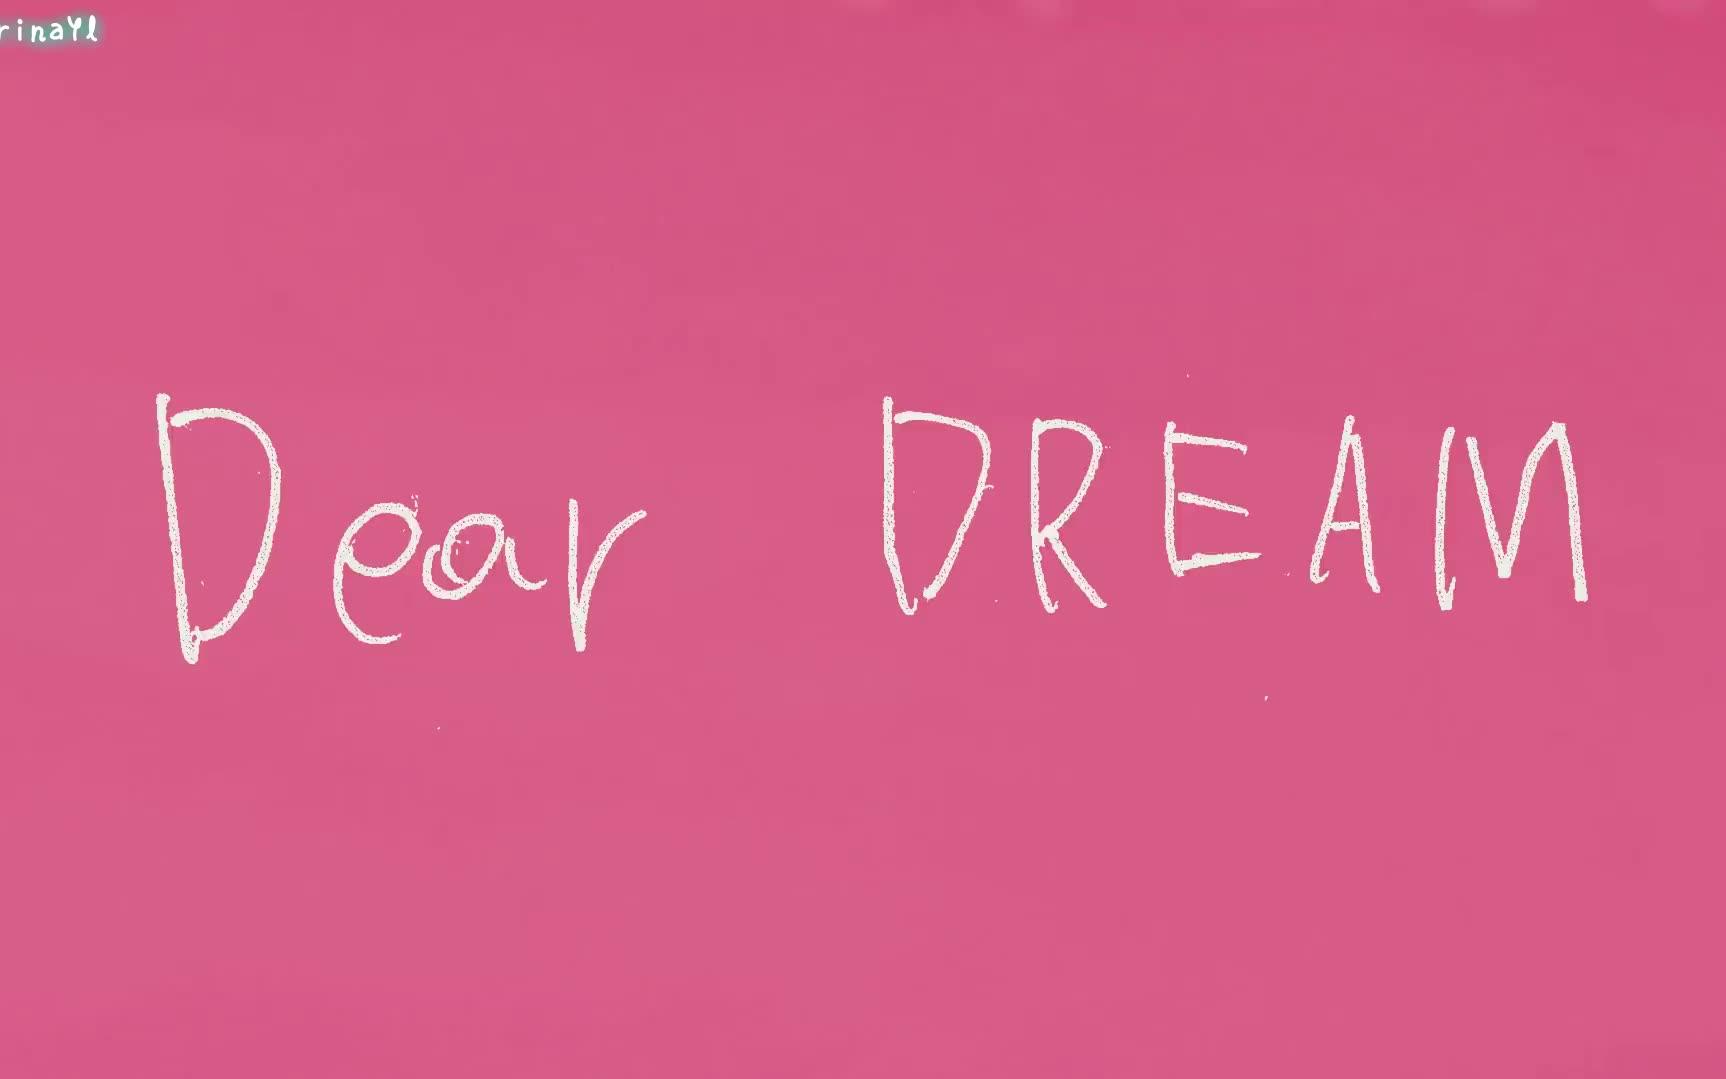 【NCT DREAM】Dear Dream MV 完整版_哔哩哔哩 (゜-゜)つロ 干杯~-bilibili